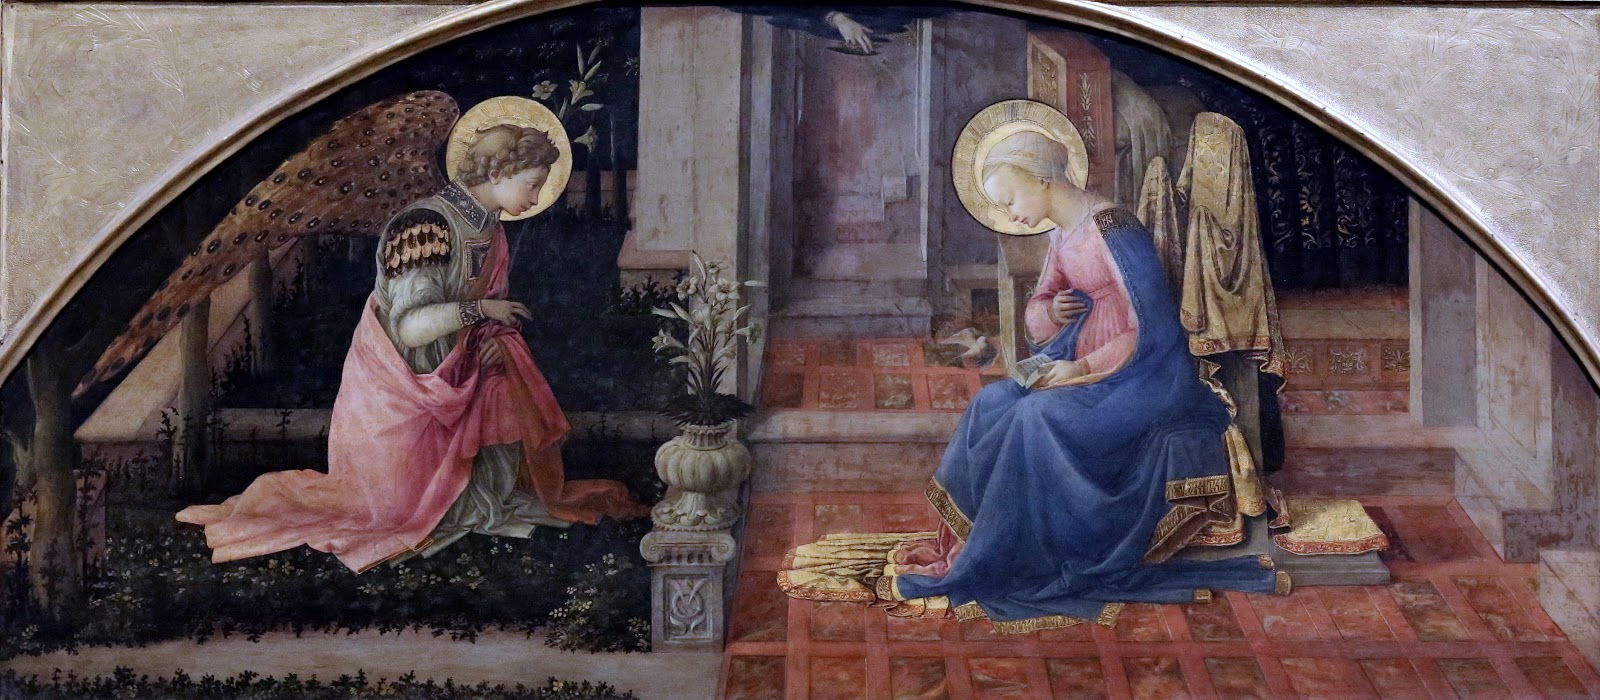 Filippino+Lippi-1457-1504 (144).jpg